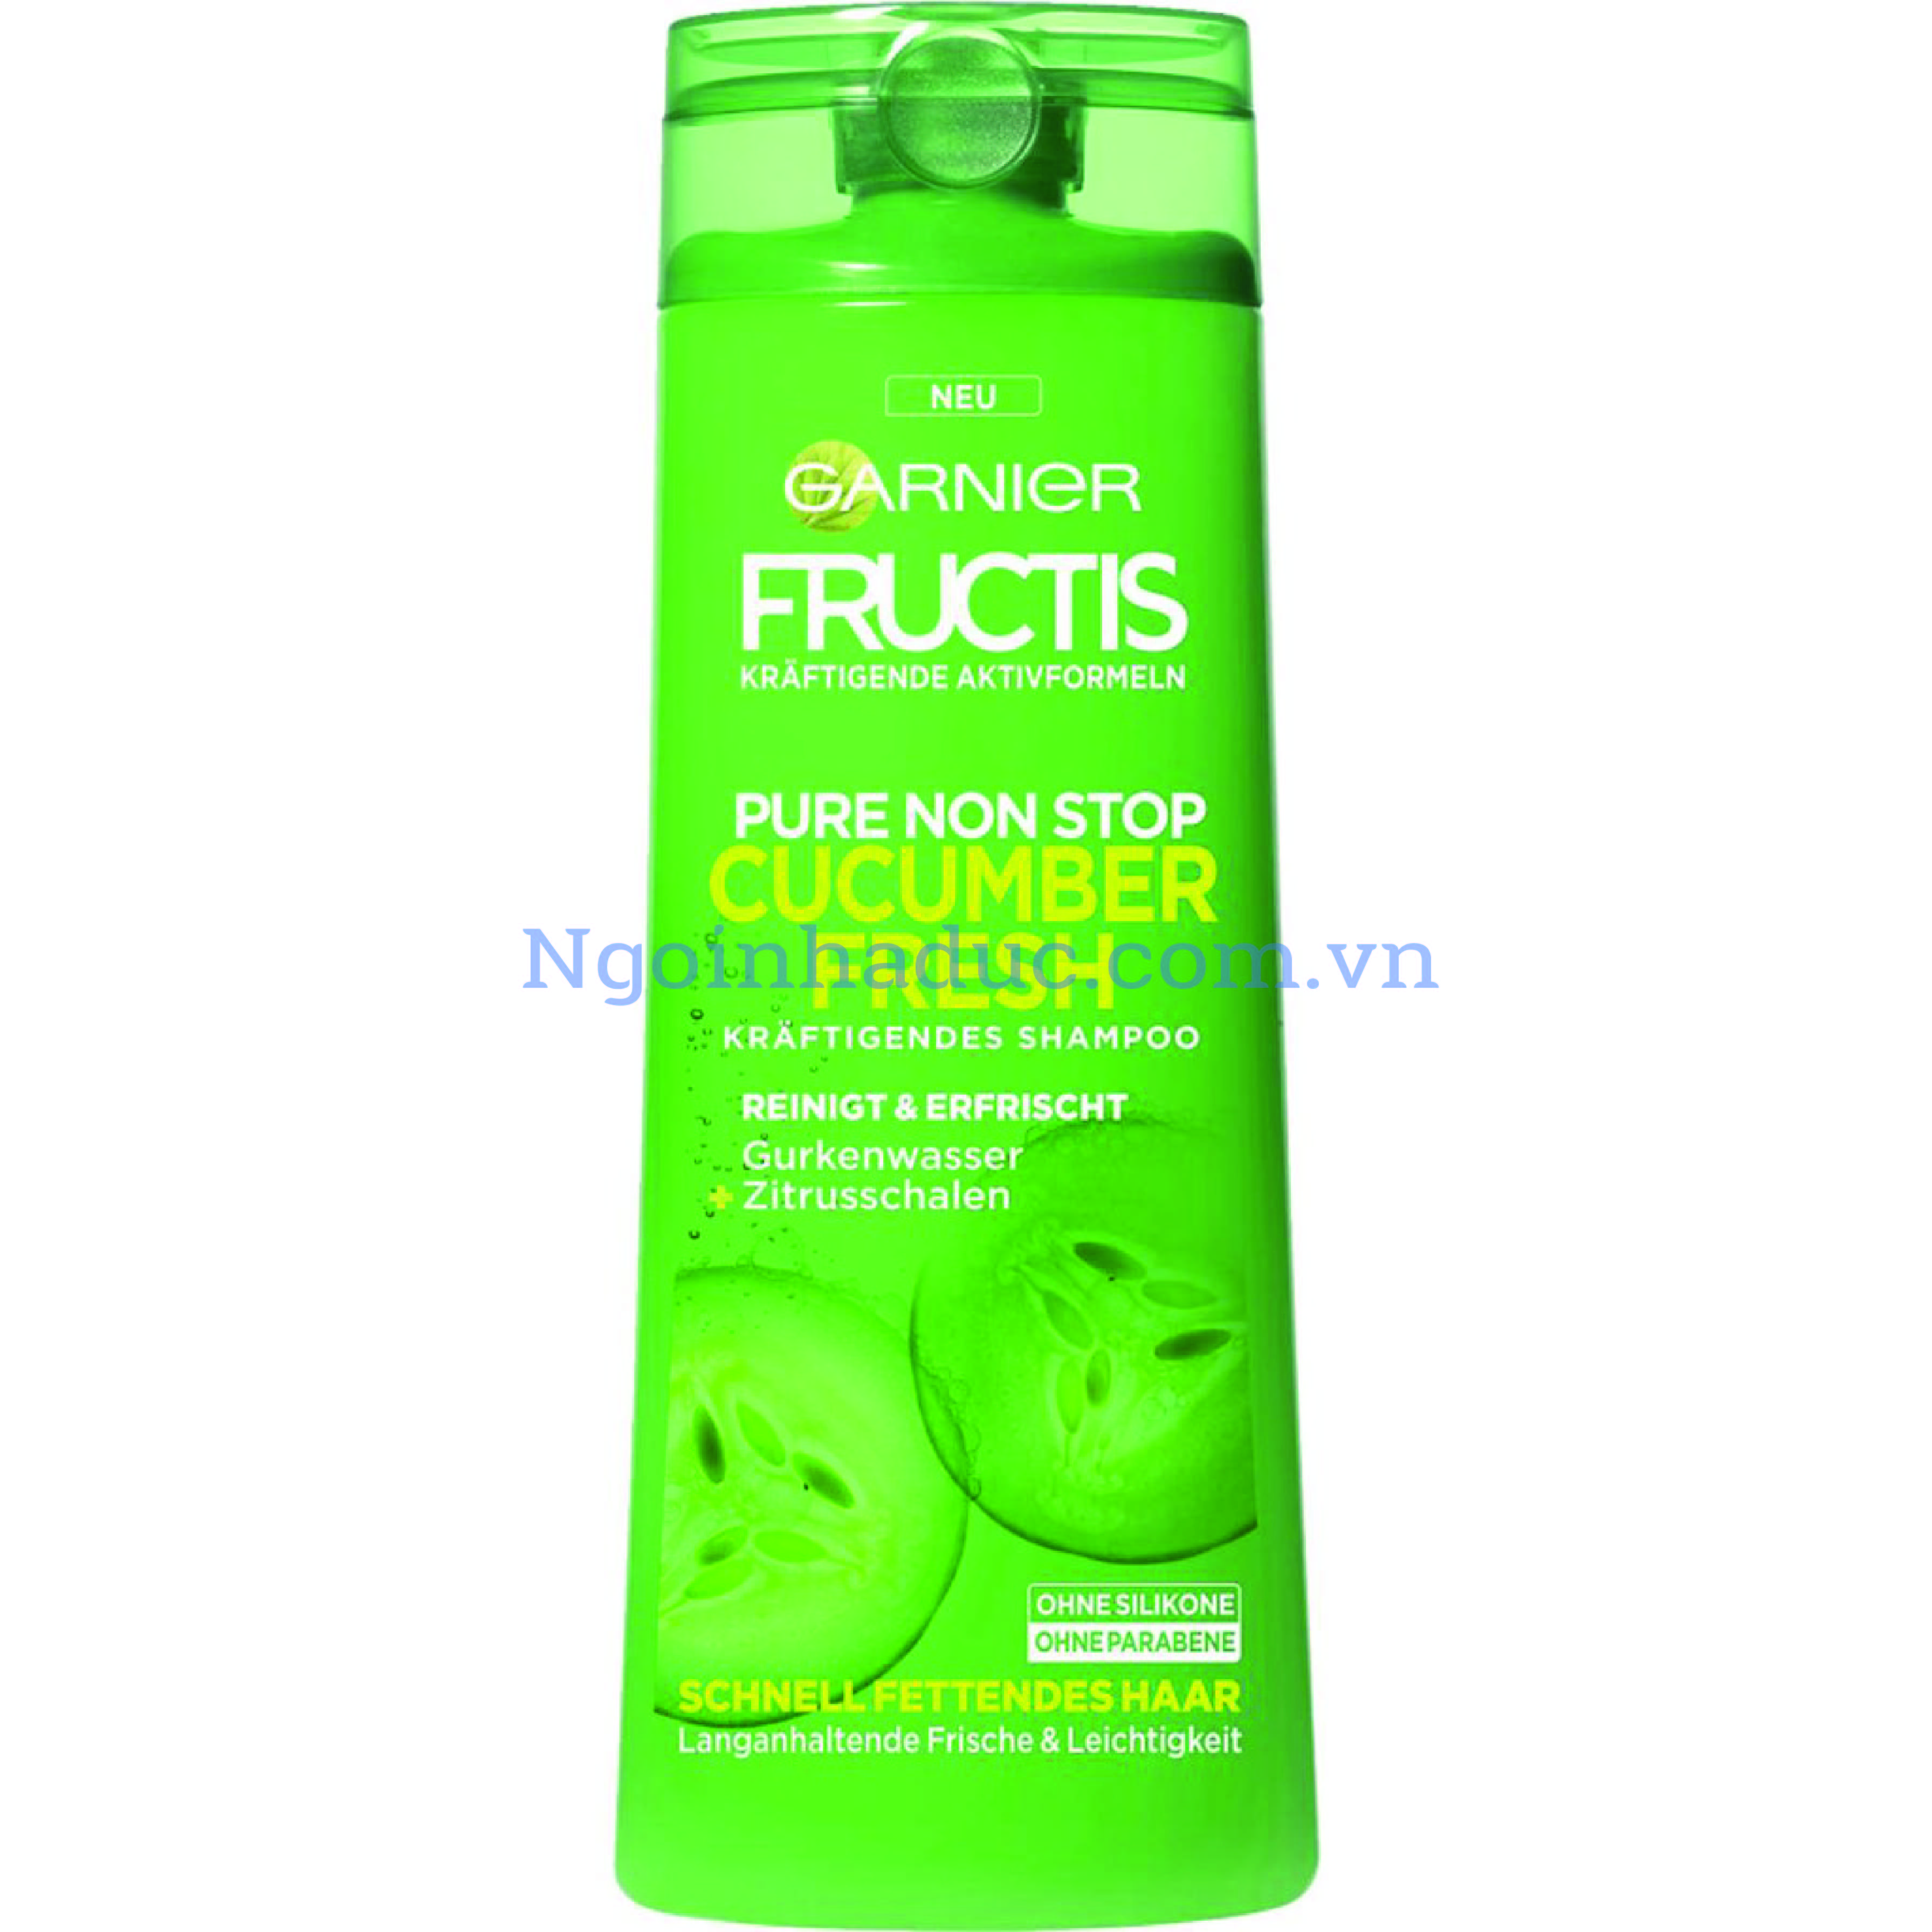 Dầu gội Fructis Cucumber Fresh 250ml màu xanh cây (Tóc dầu)